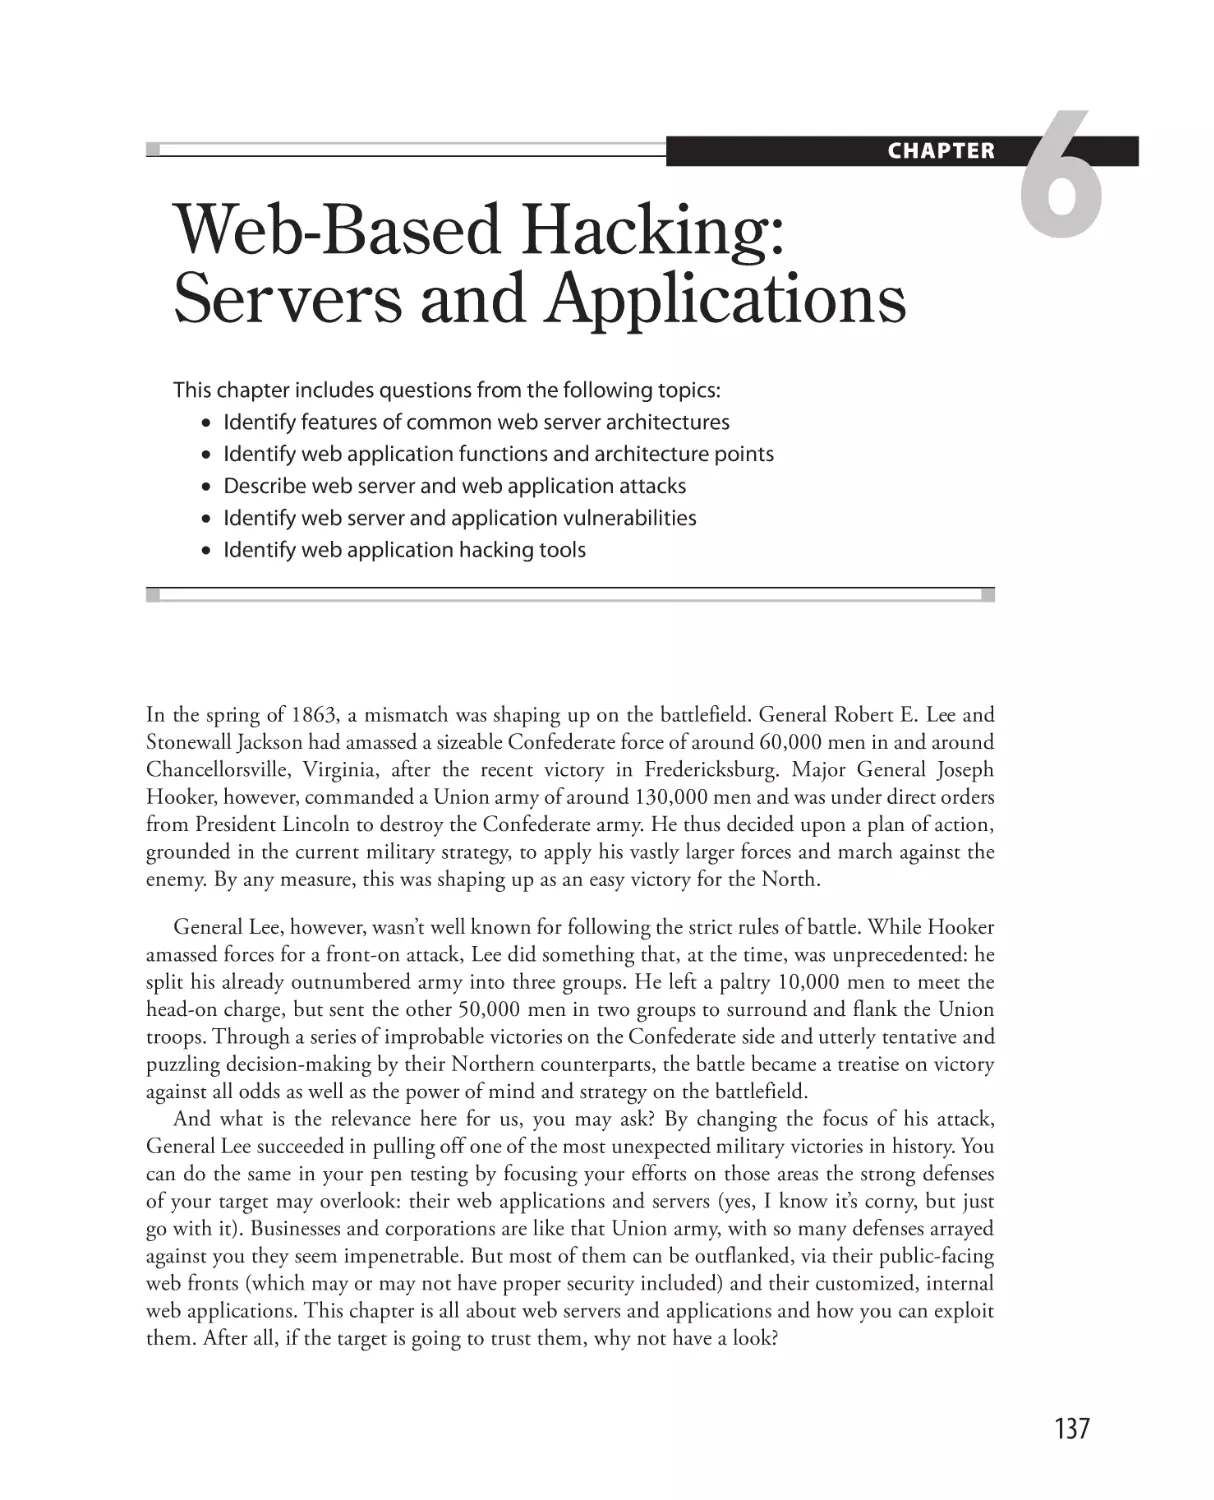 Web-Based Hacking